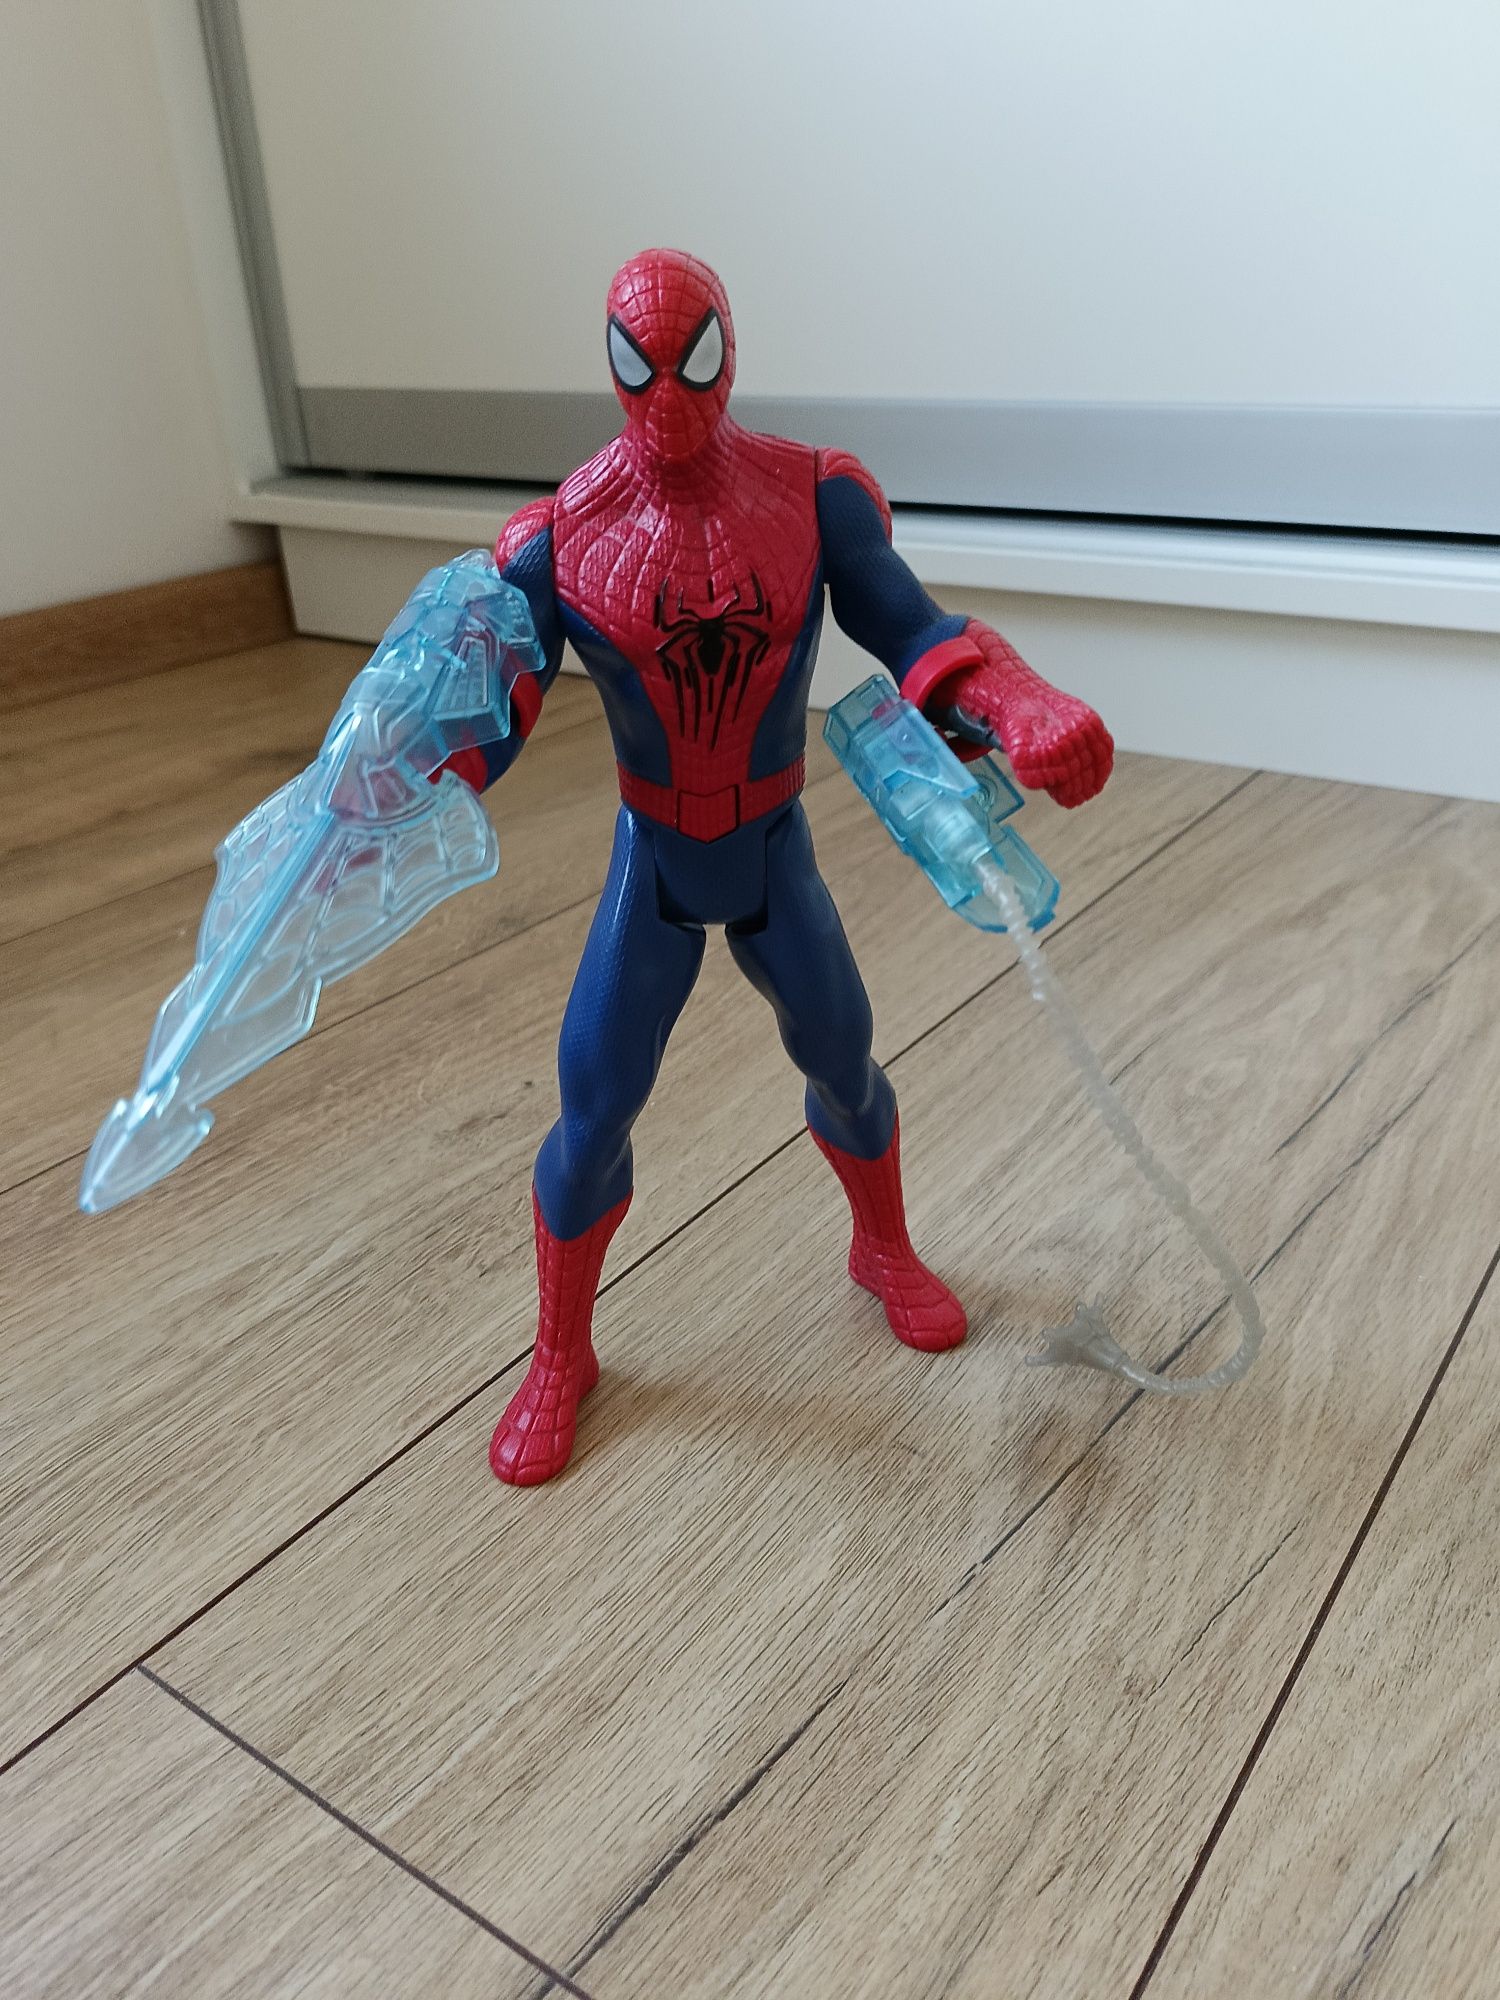 Figurka Spiderman